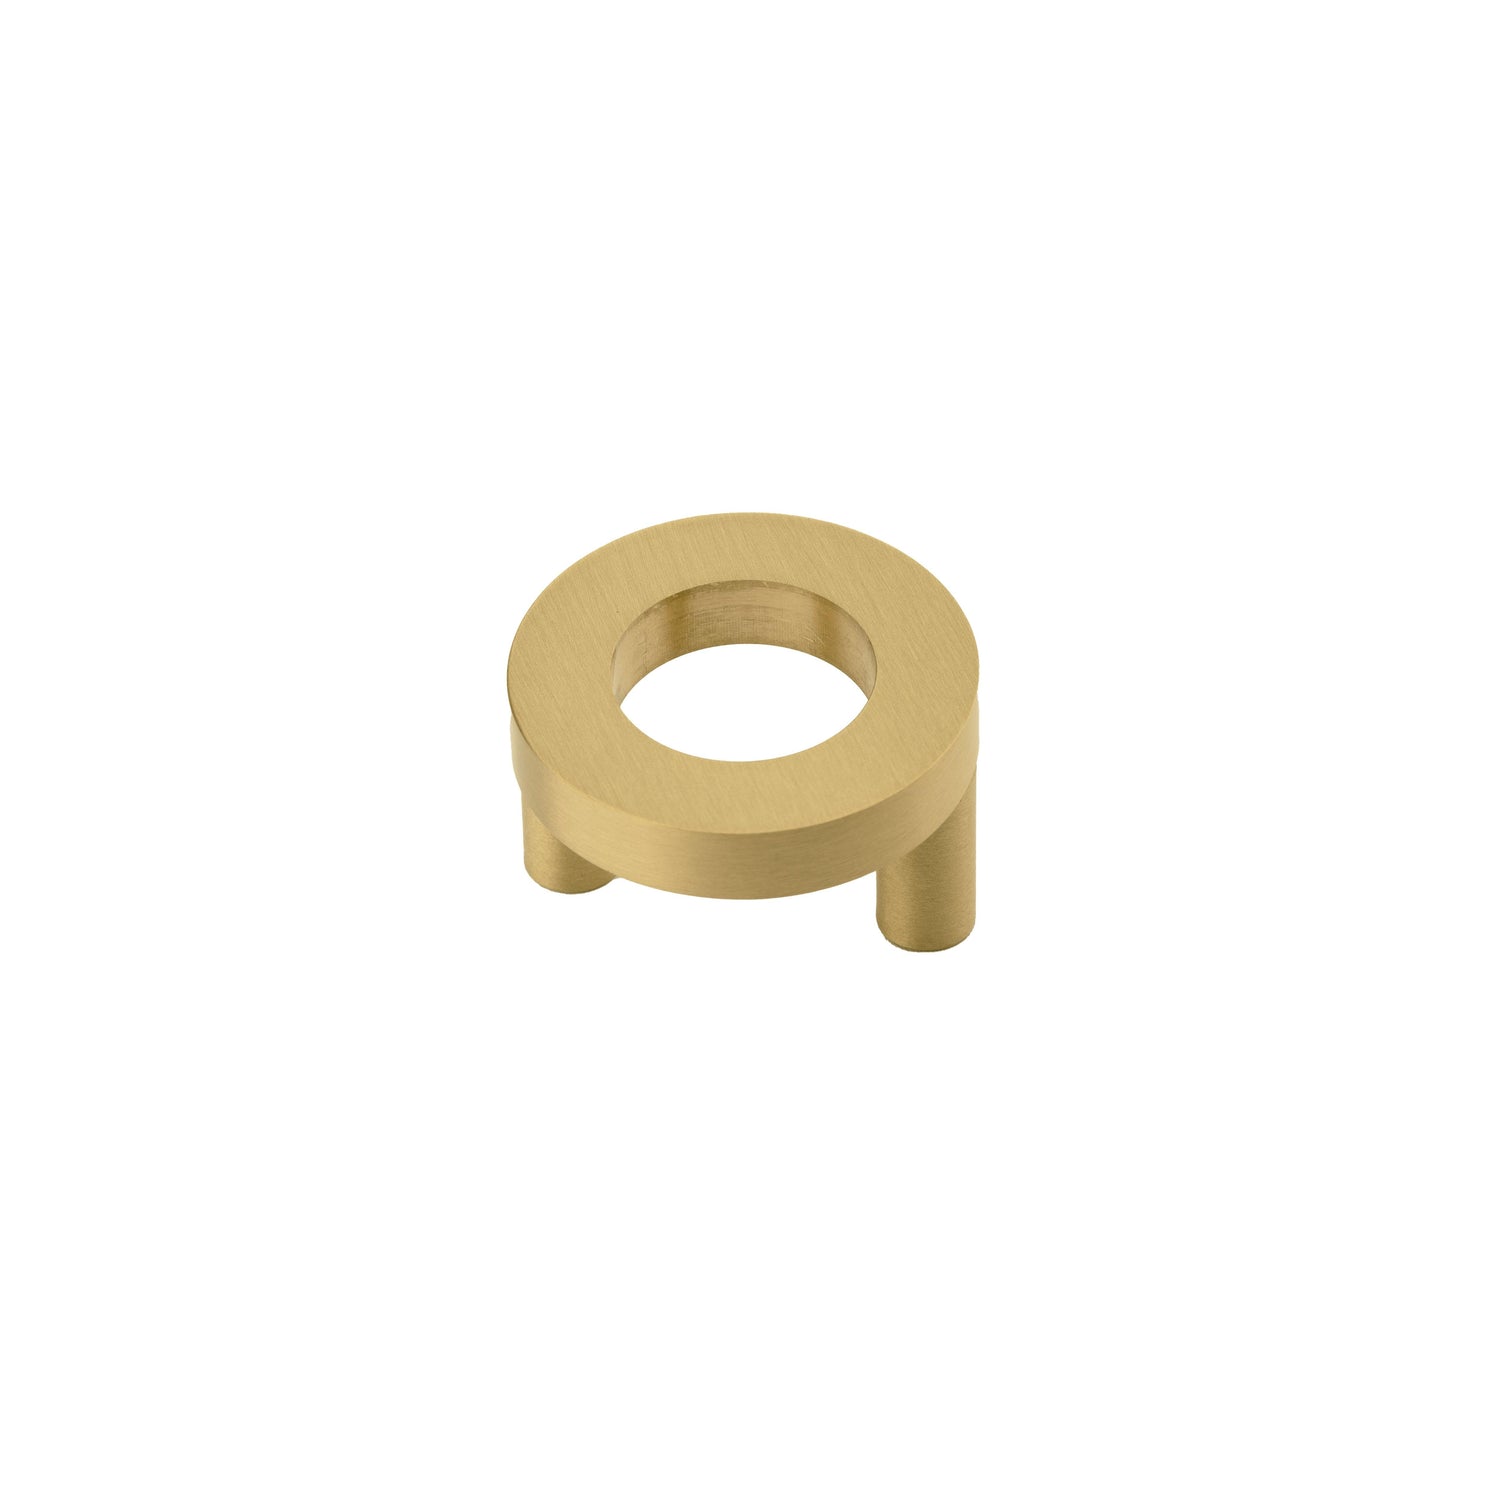 Lupa Knob Knob 36mm / Gold / Brass - M A N T A R A